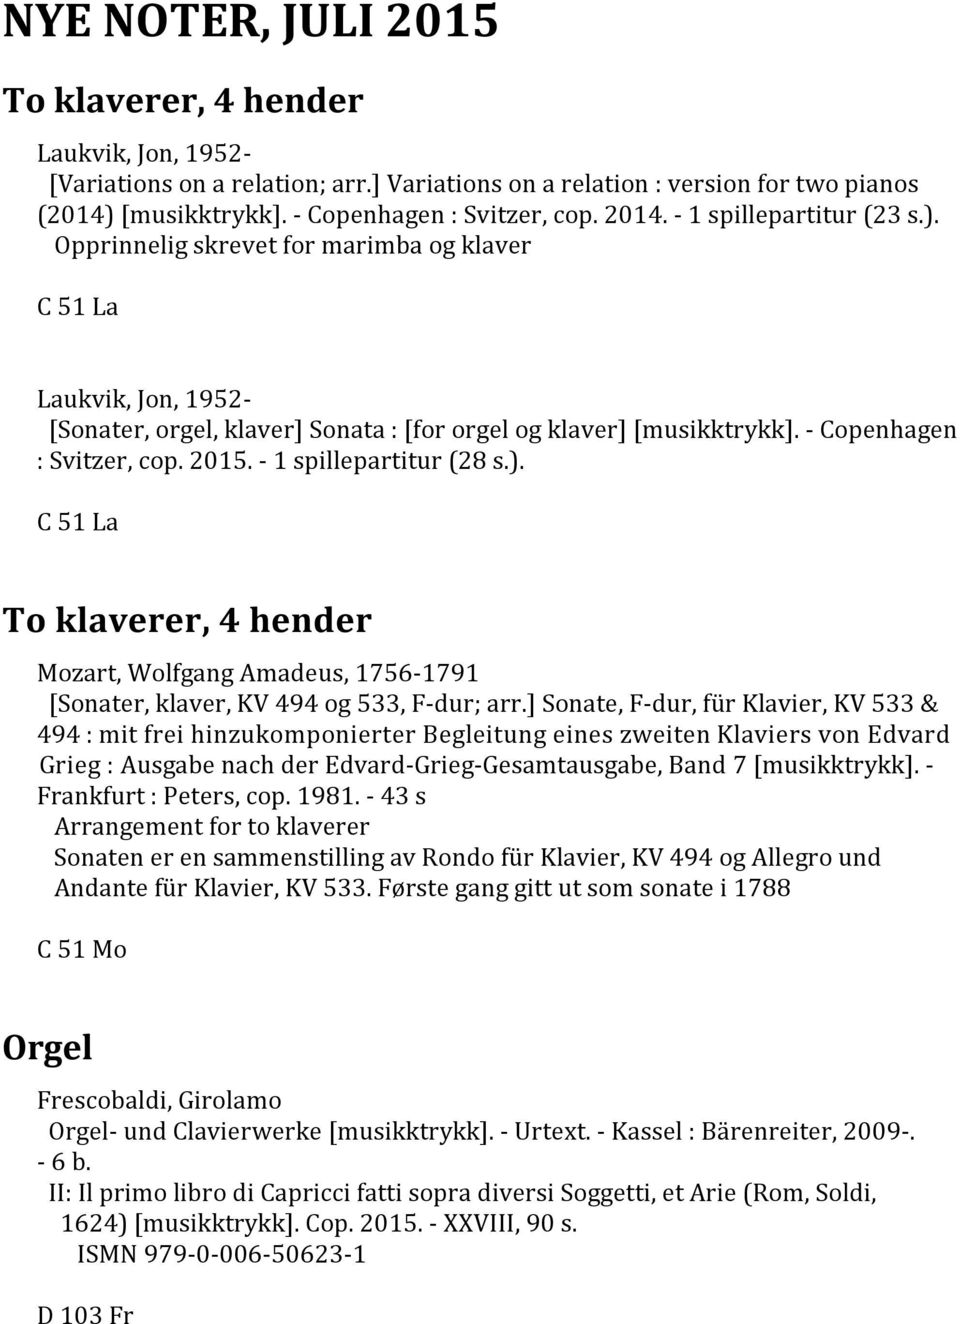 - Copenhagen : Svitzer, cop. 2015. - 1 spillepartitur (28 s.). C 51 La To klaverer, 4 hender [Sonater, klaver, KV 494 og 533, F-dur; arr.